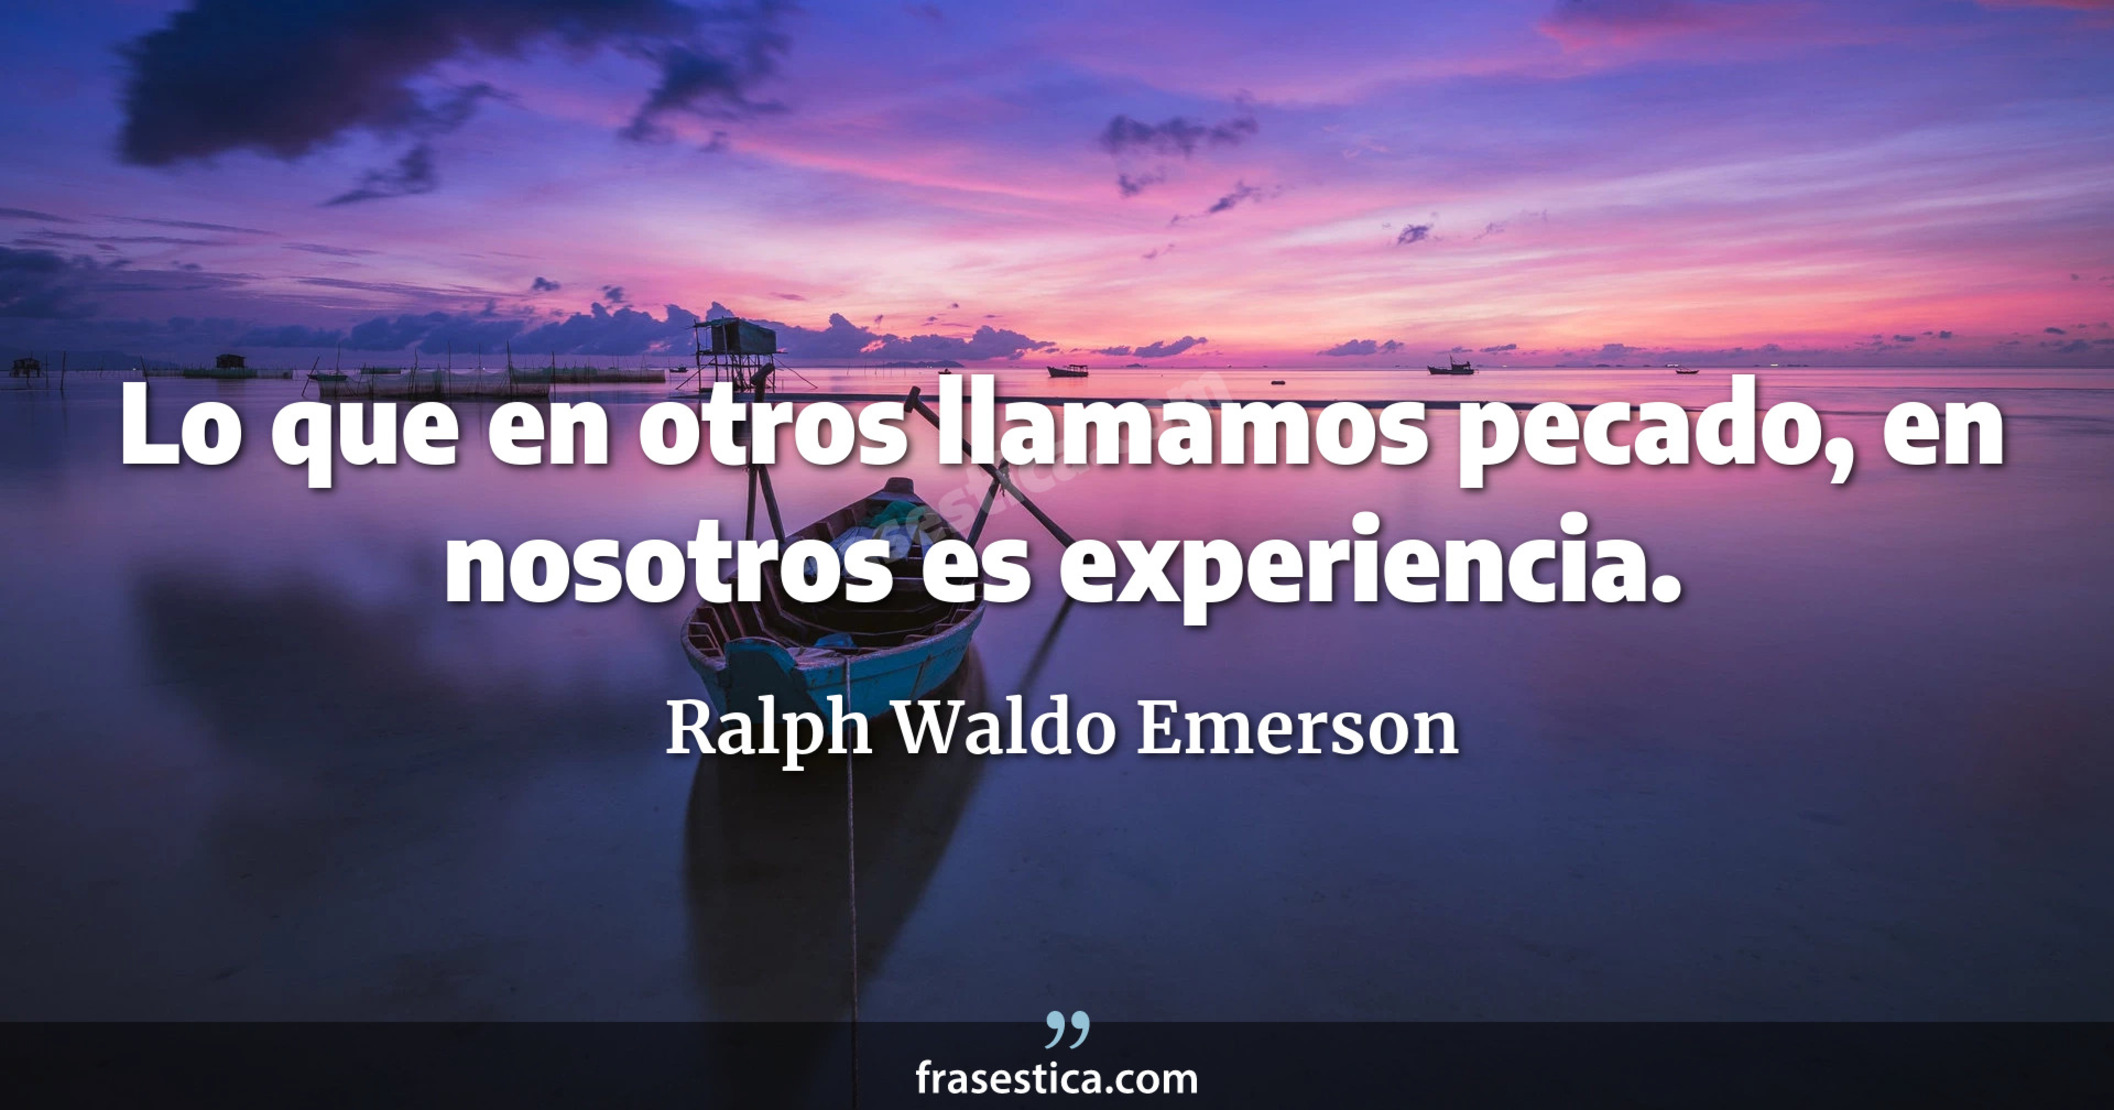 Lo que en otros llamamos pecado, en nosotros es experiencia. - Ralph Waldo Emerson